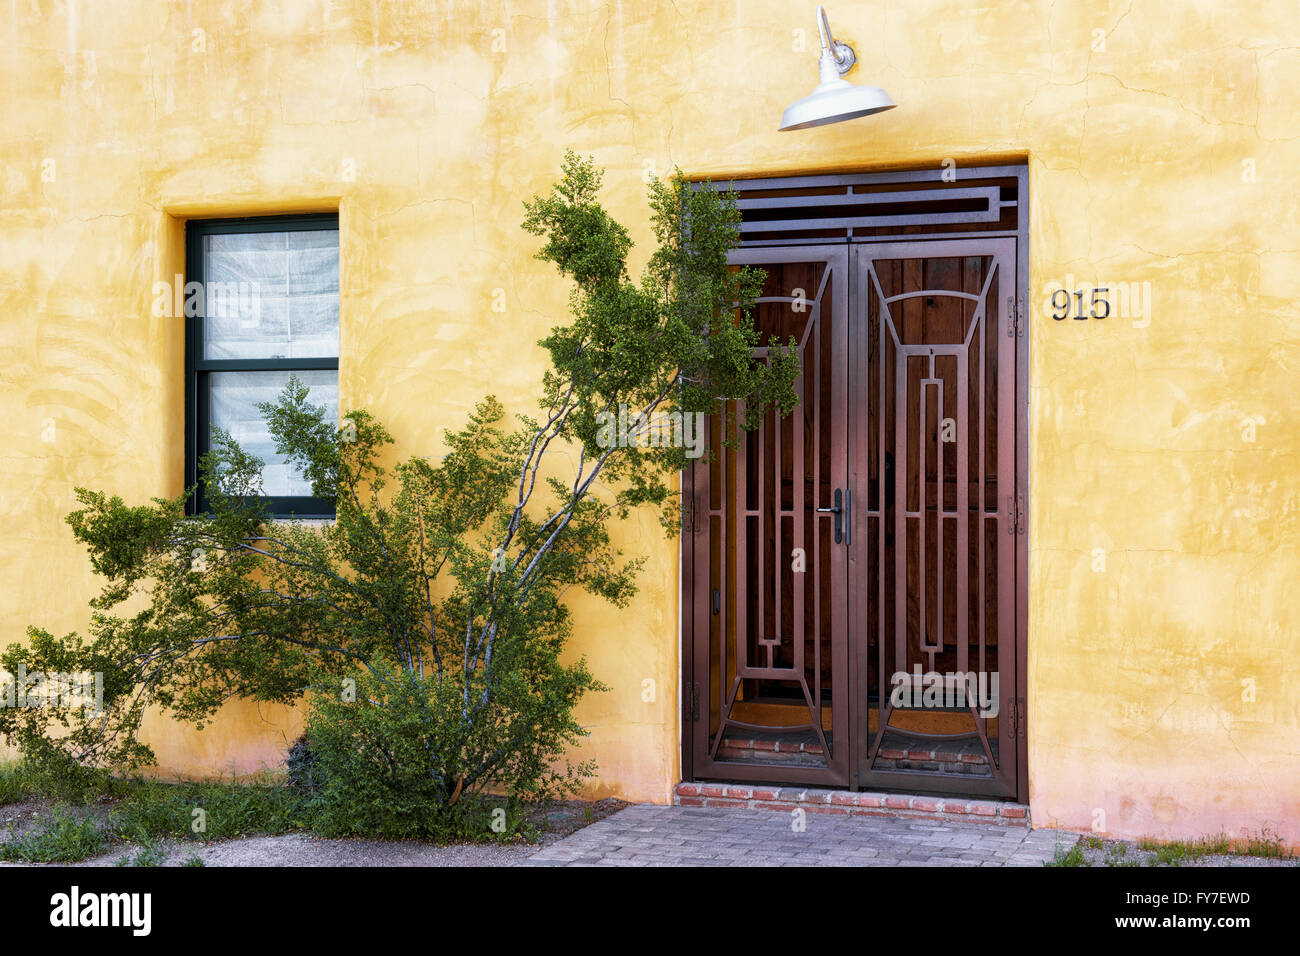 Bunte Architektur einschließlich Türen und Adobe Häusern Make-up viel des Barrio Historic District in Tucson, Arizona. Stockfoto